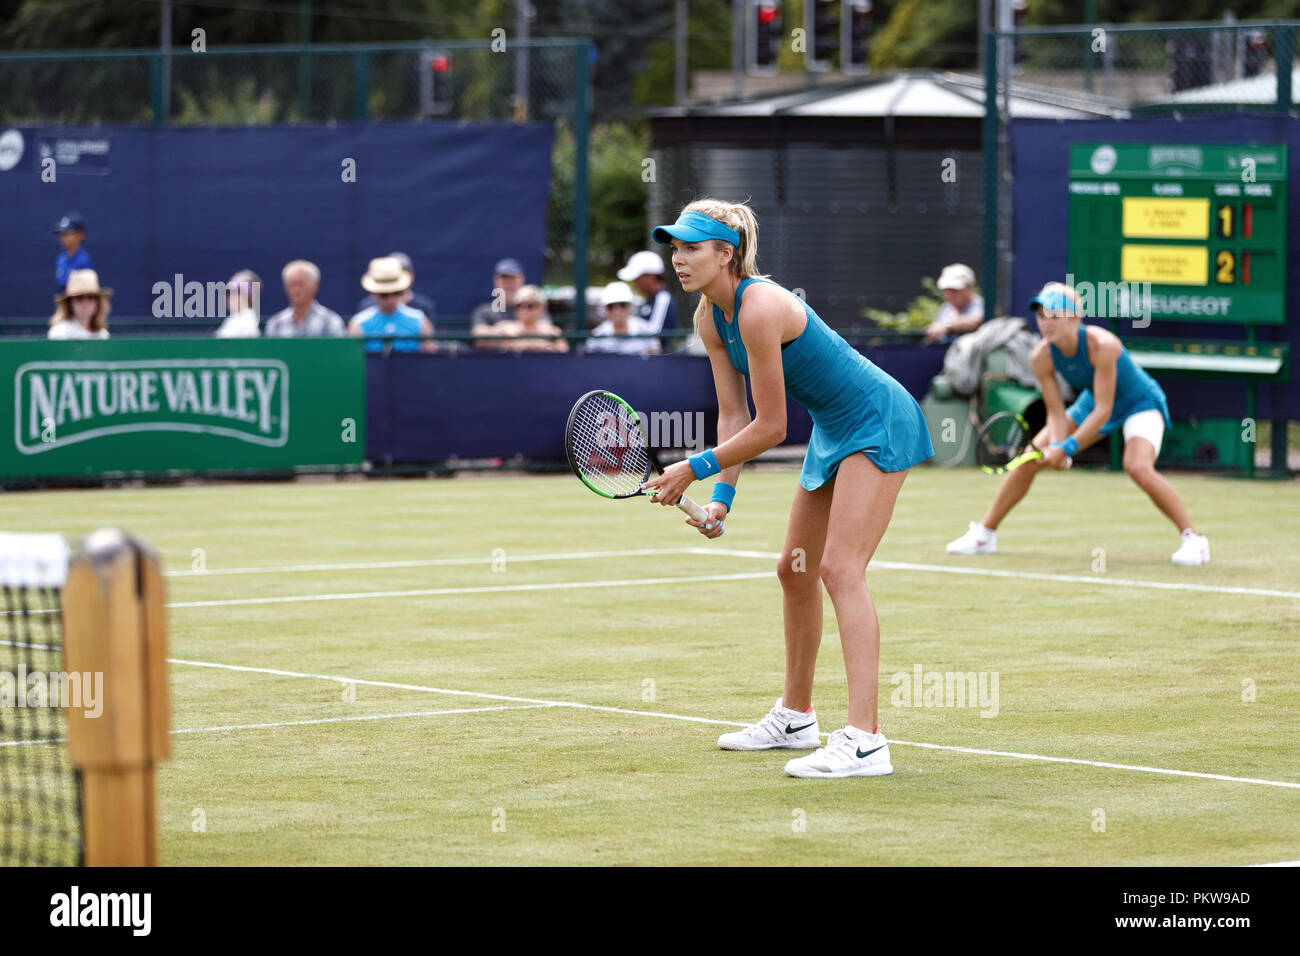 Les joueurs de tennis britannique Katie Boulter (premier plan) et Katie Swan (arrière-plan) attendent leur adversaire servir lors d'un match de double de la femme à un tournoi cour herbe professionnel au Royaume-Uni. Boulter et Swan joué ensemble dans des tenues. Banque D'Images